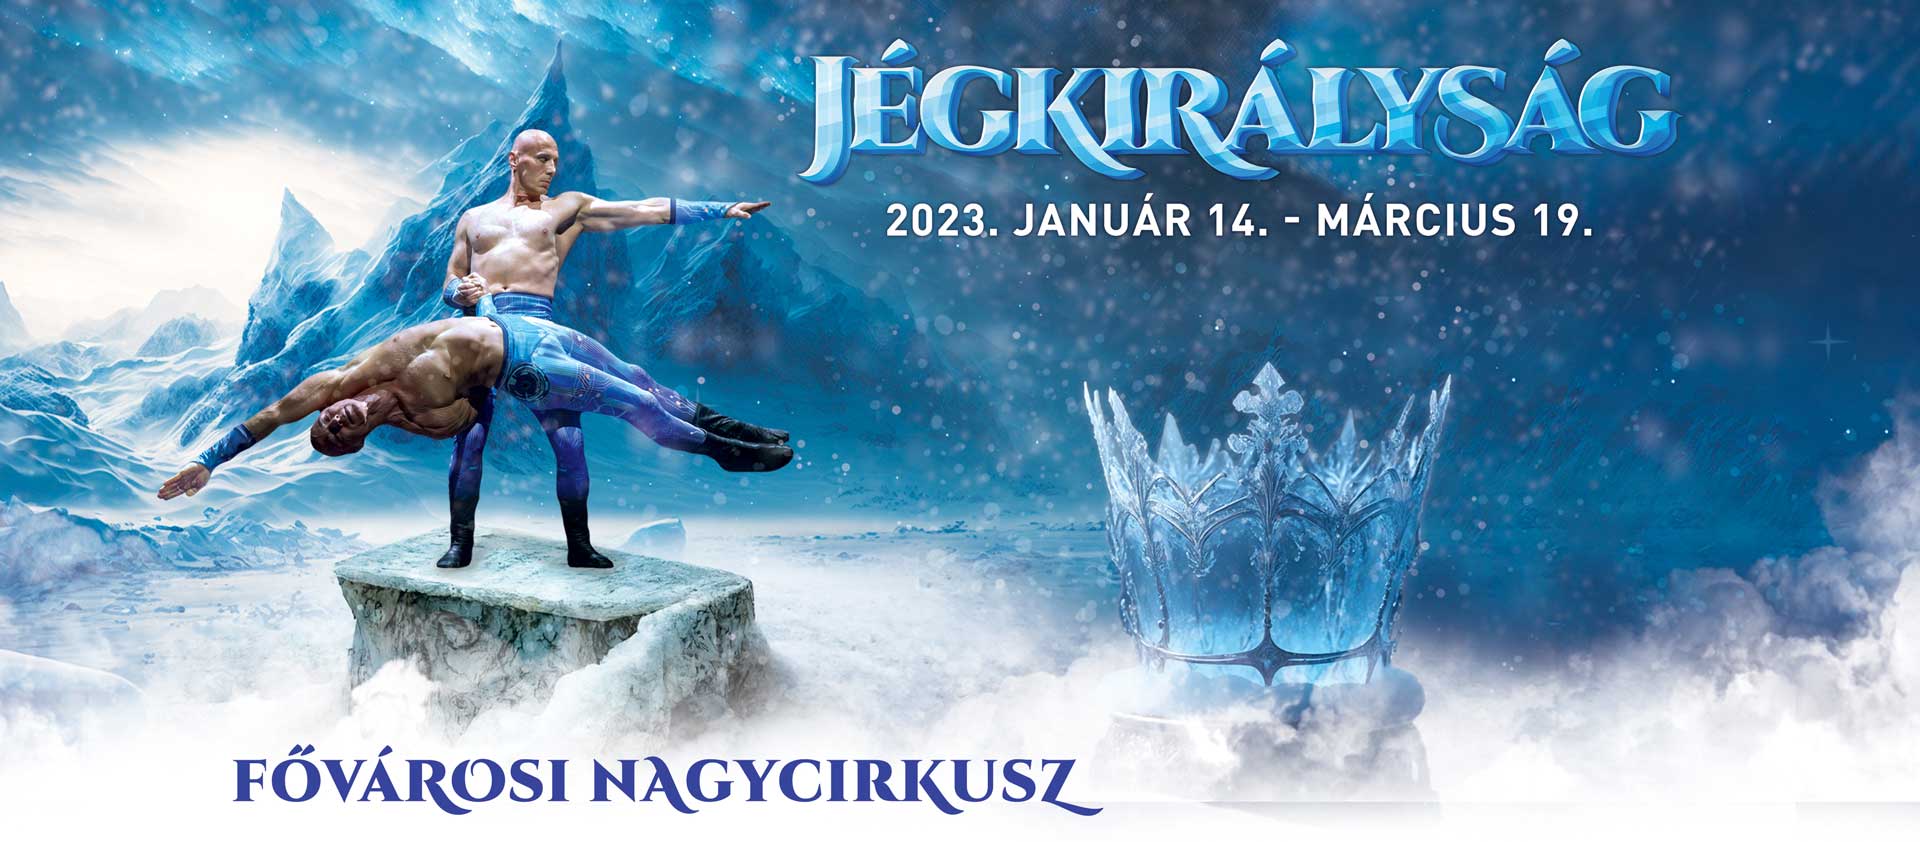 Jégcirkuszi előadás premier és kiállításmegnyitó a Fővárosi Nagycirkuszban